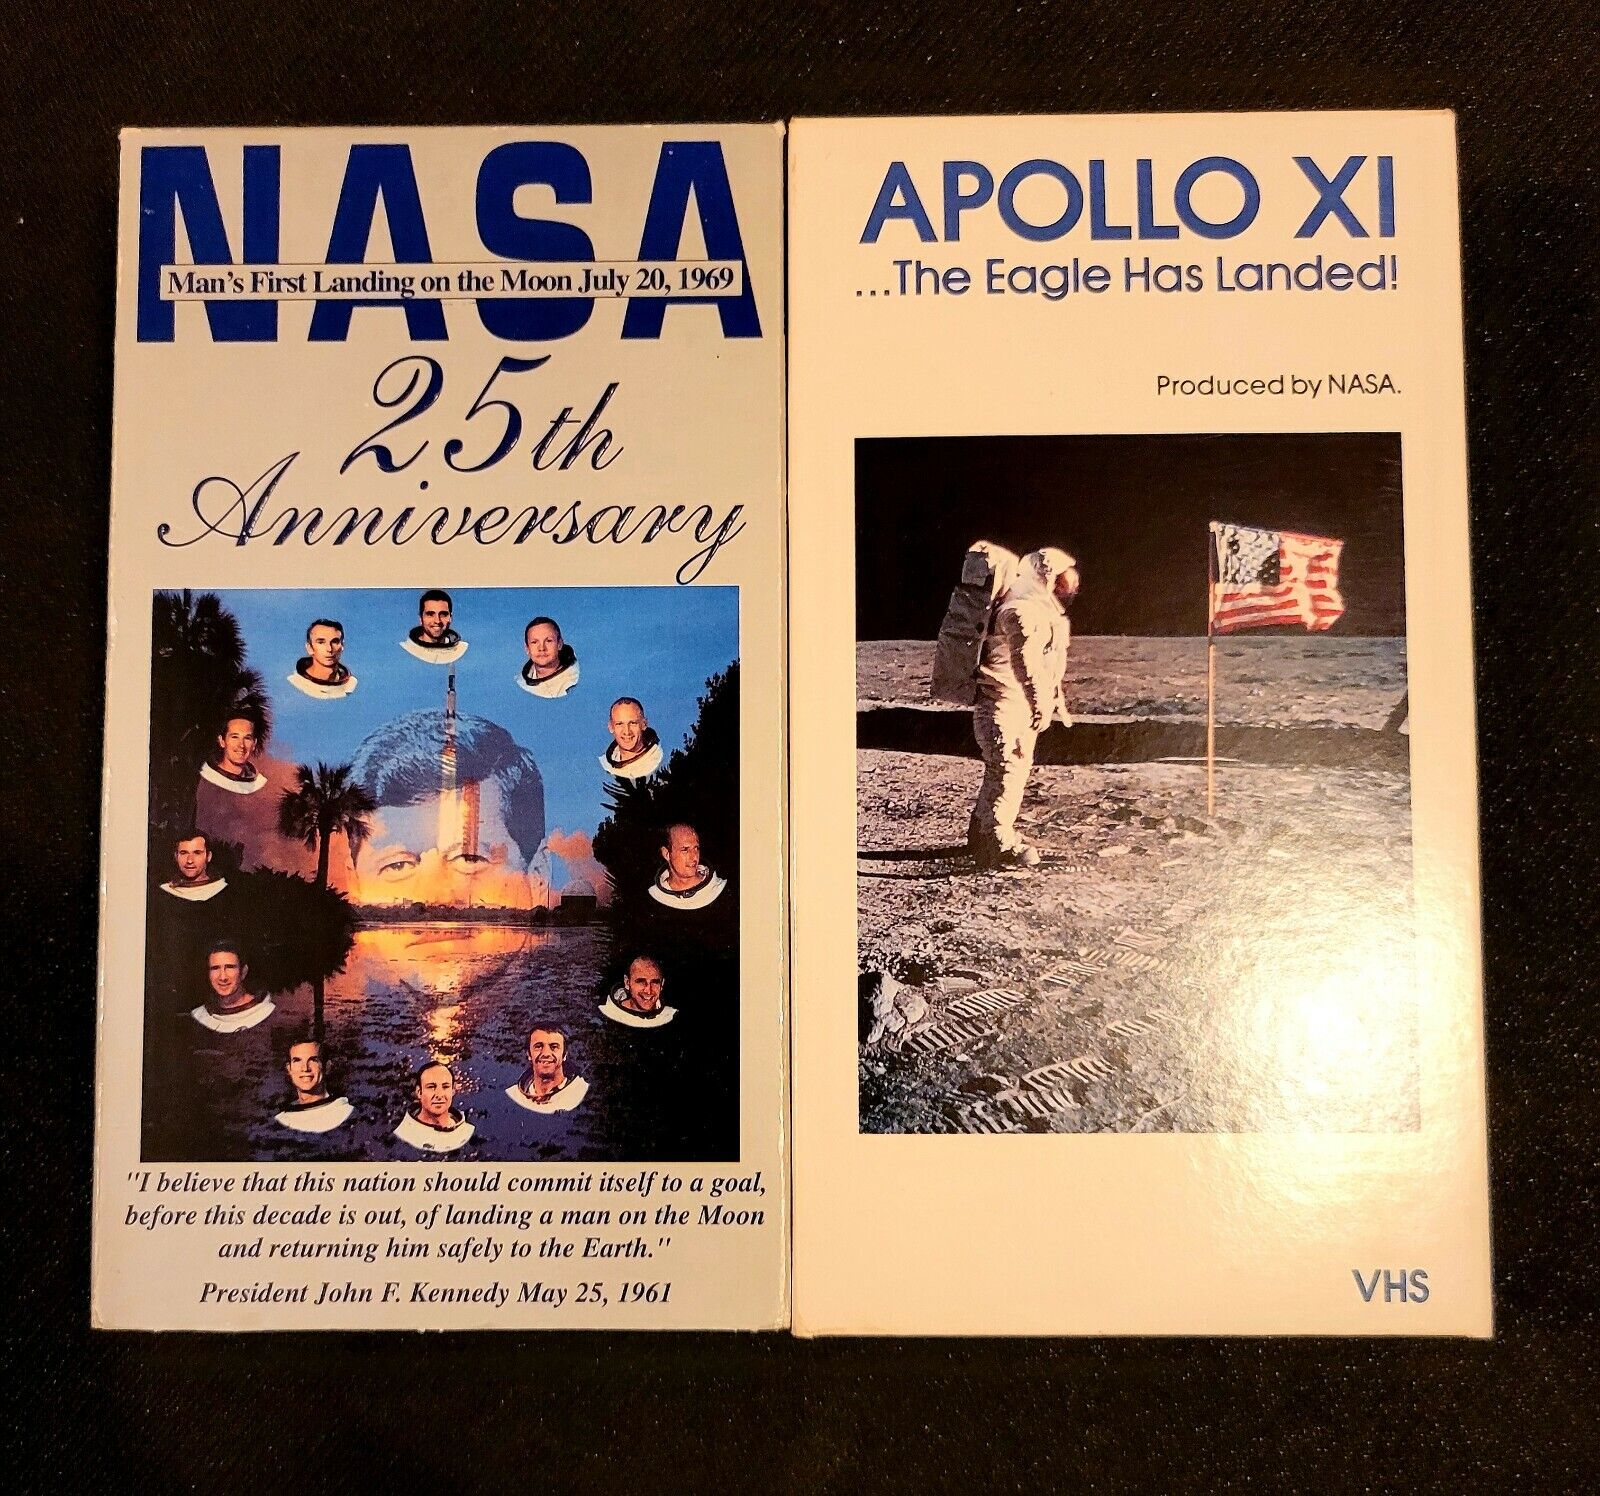 NASA 25th Anniversary and ApolloXI VHS